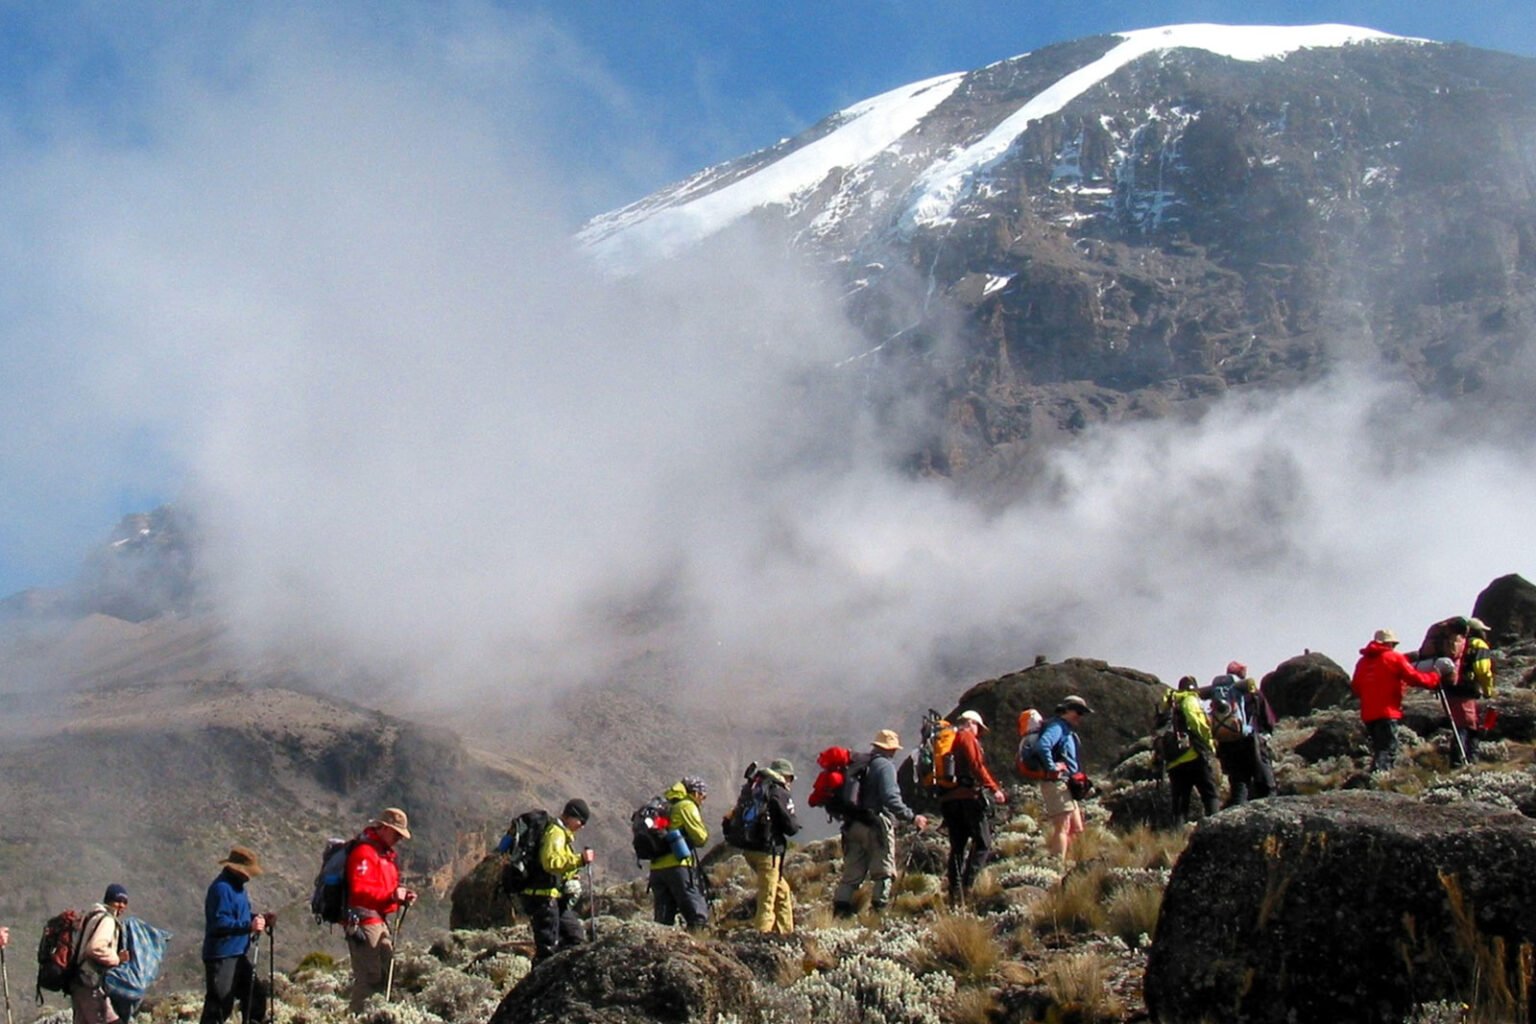 Kilimanjaro Climbing Routes